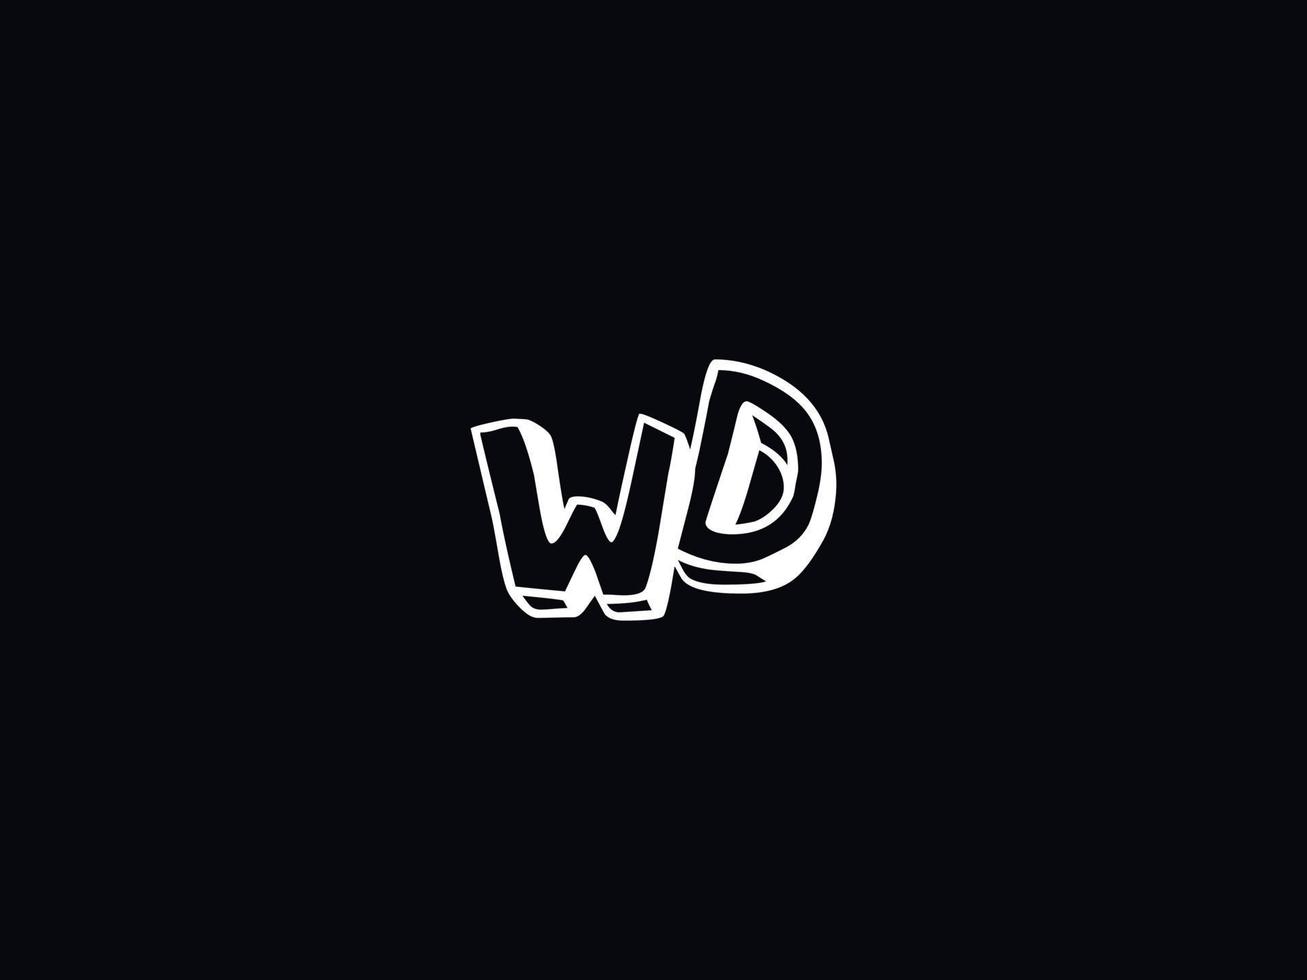 Unique Wd Logo Icon, Creative WD Colorful Letter Logo vector